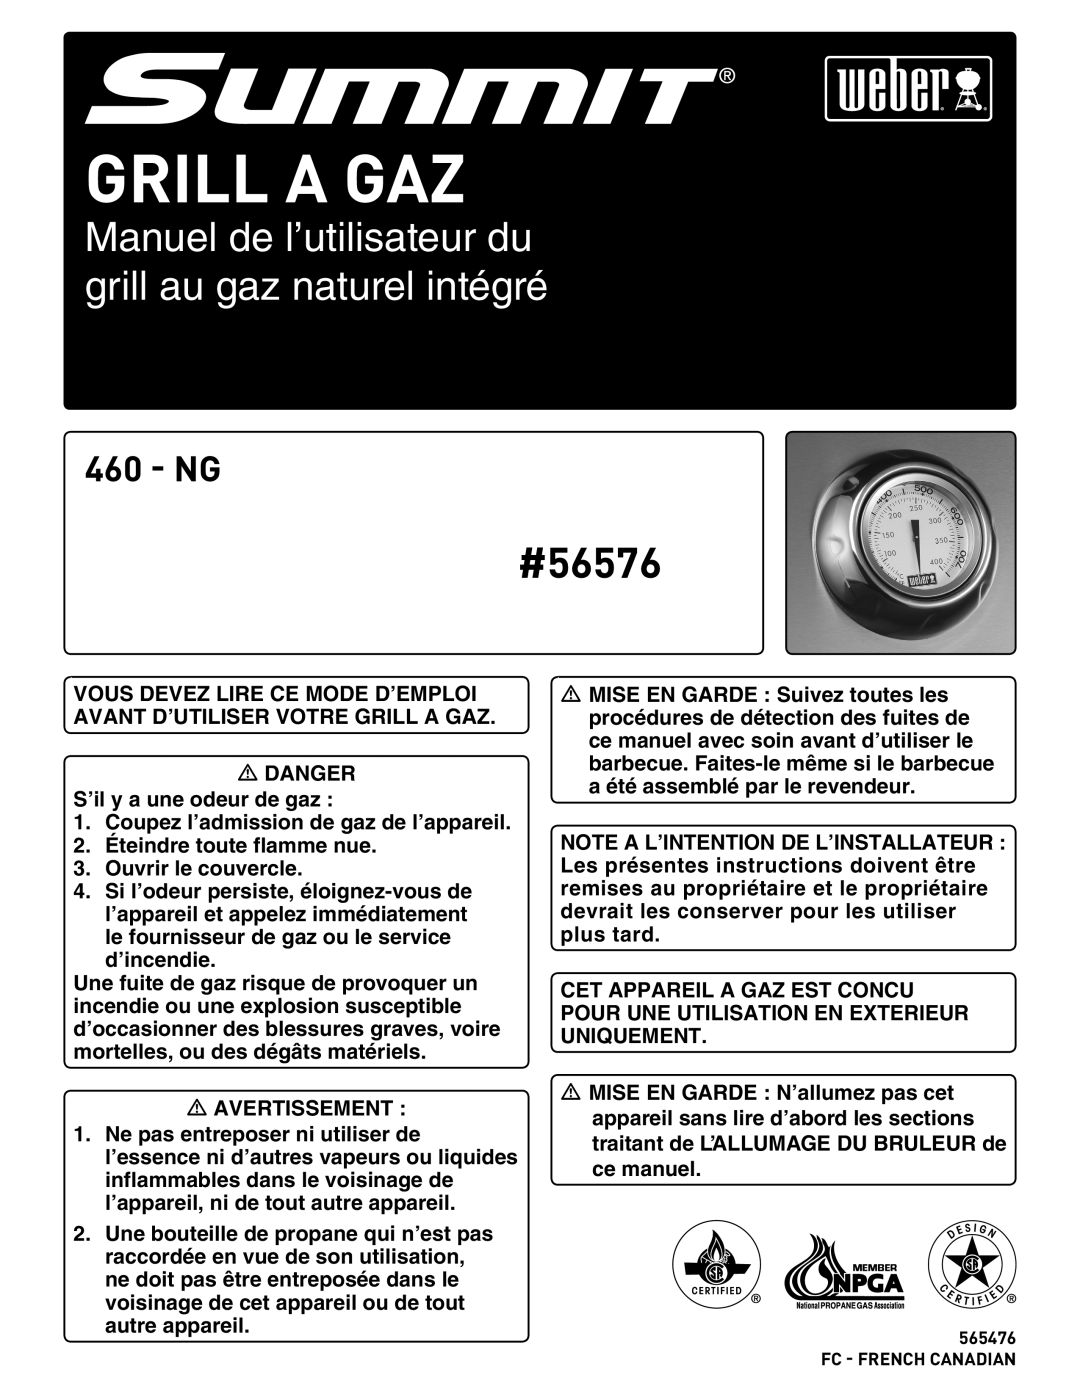 Weber manual Grill A Gaz, Manuel de l’utilisateur du grill au gaz naturel intégré, #56576, Ng 